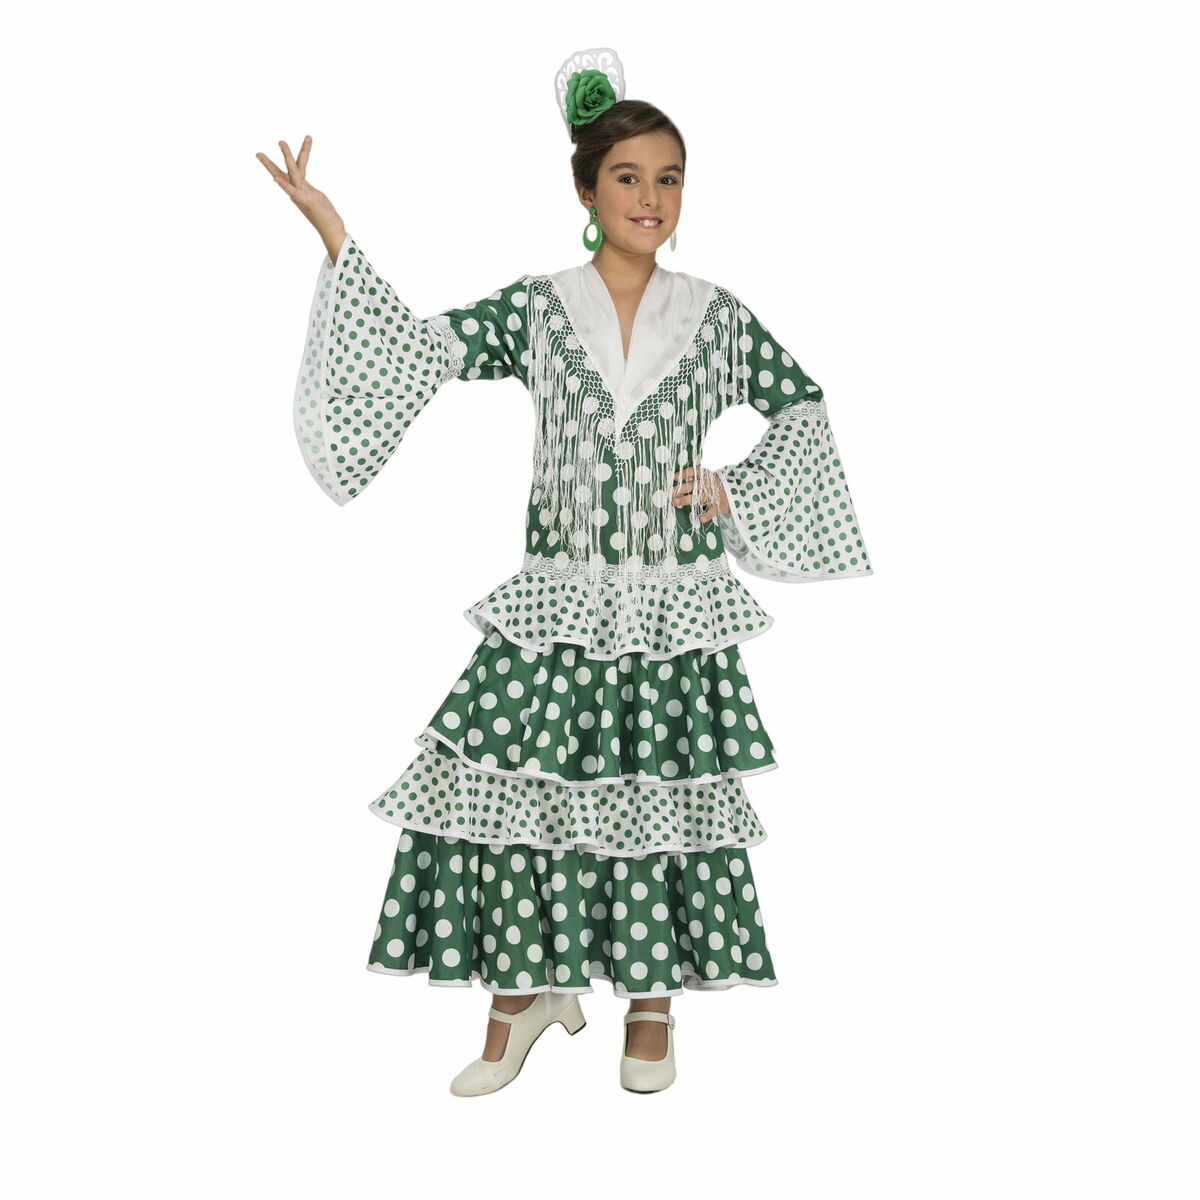 Verkleidung für Kinder My Other Me Feria grün Flamenco-Tänzerin (1 Stücke)